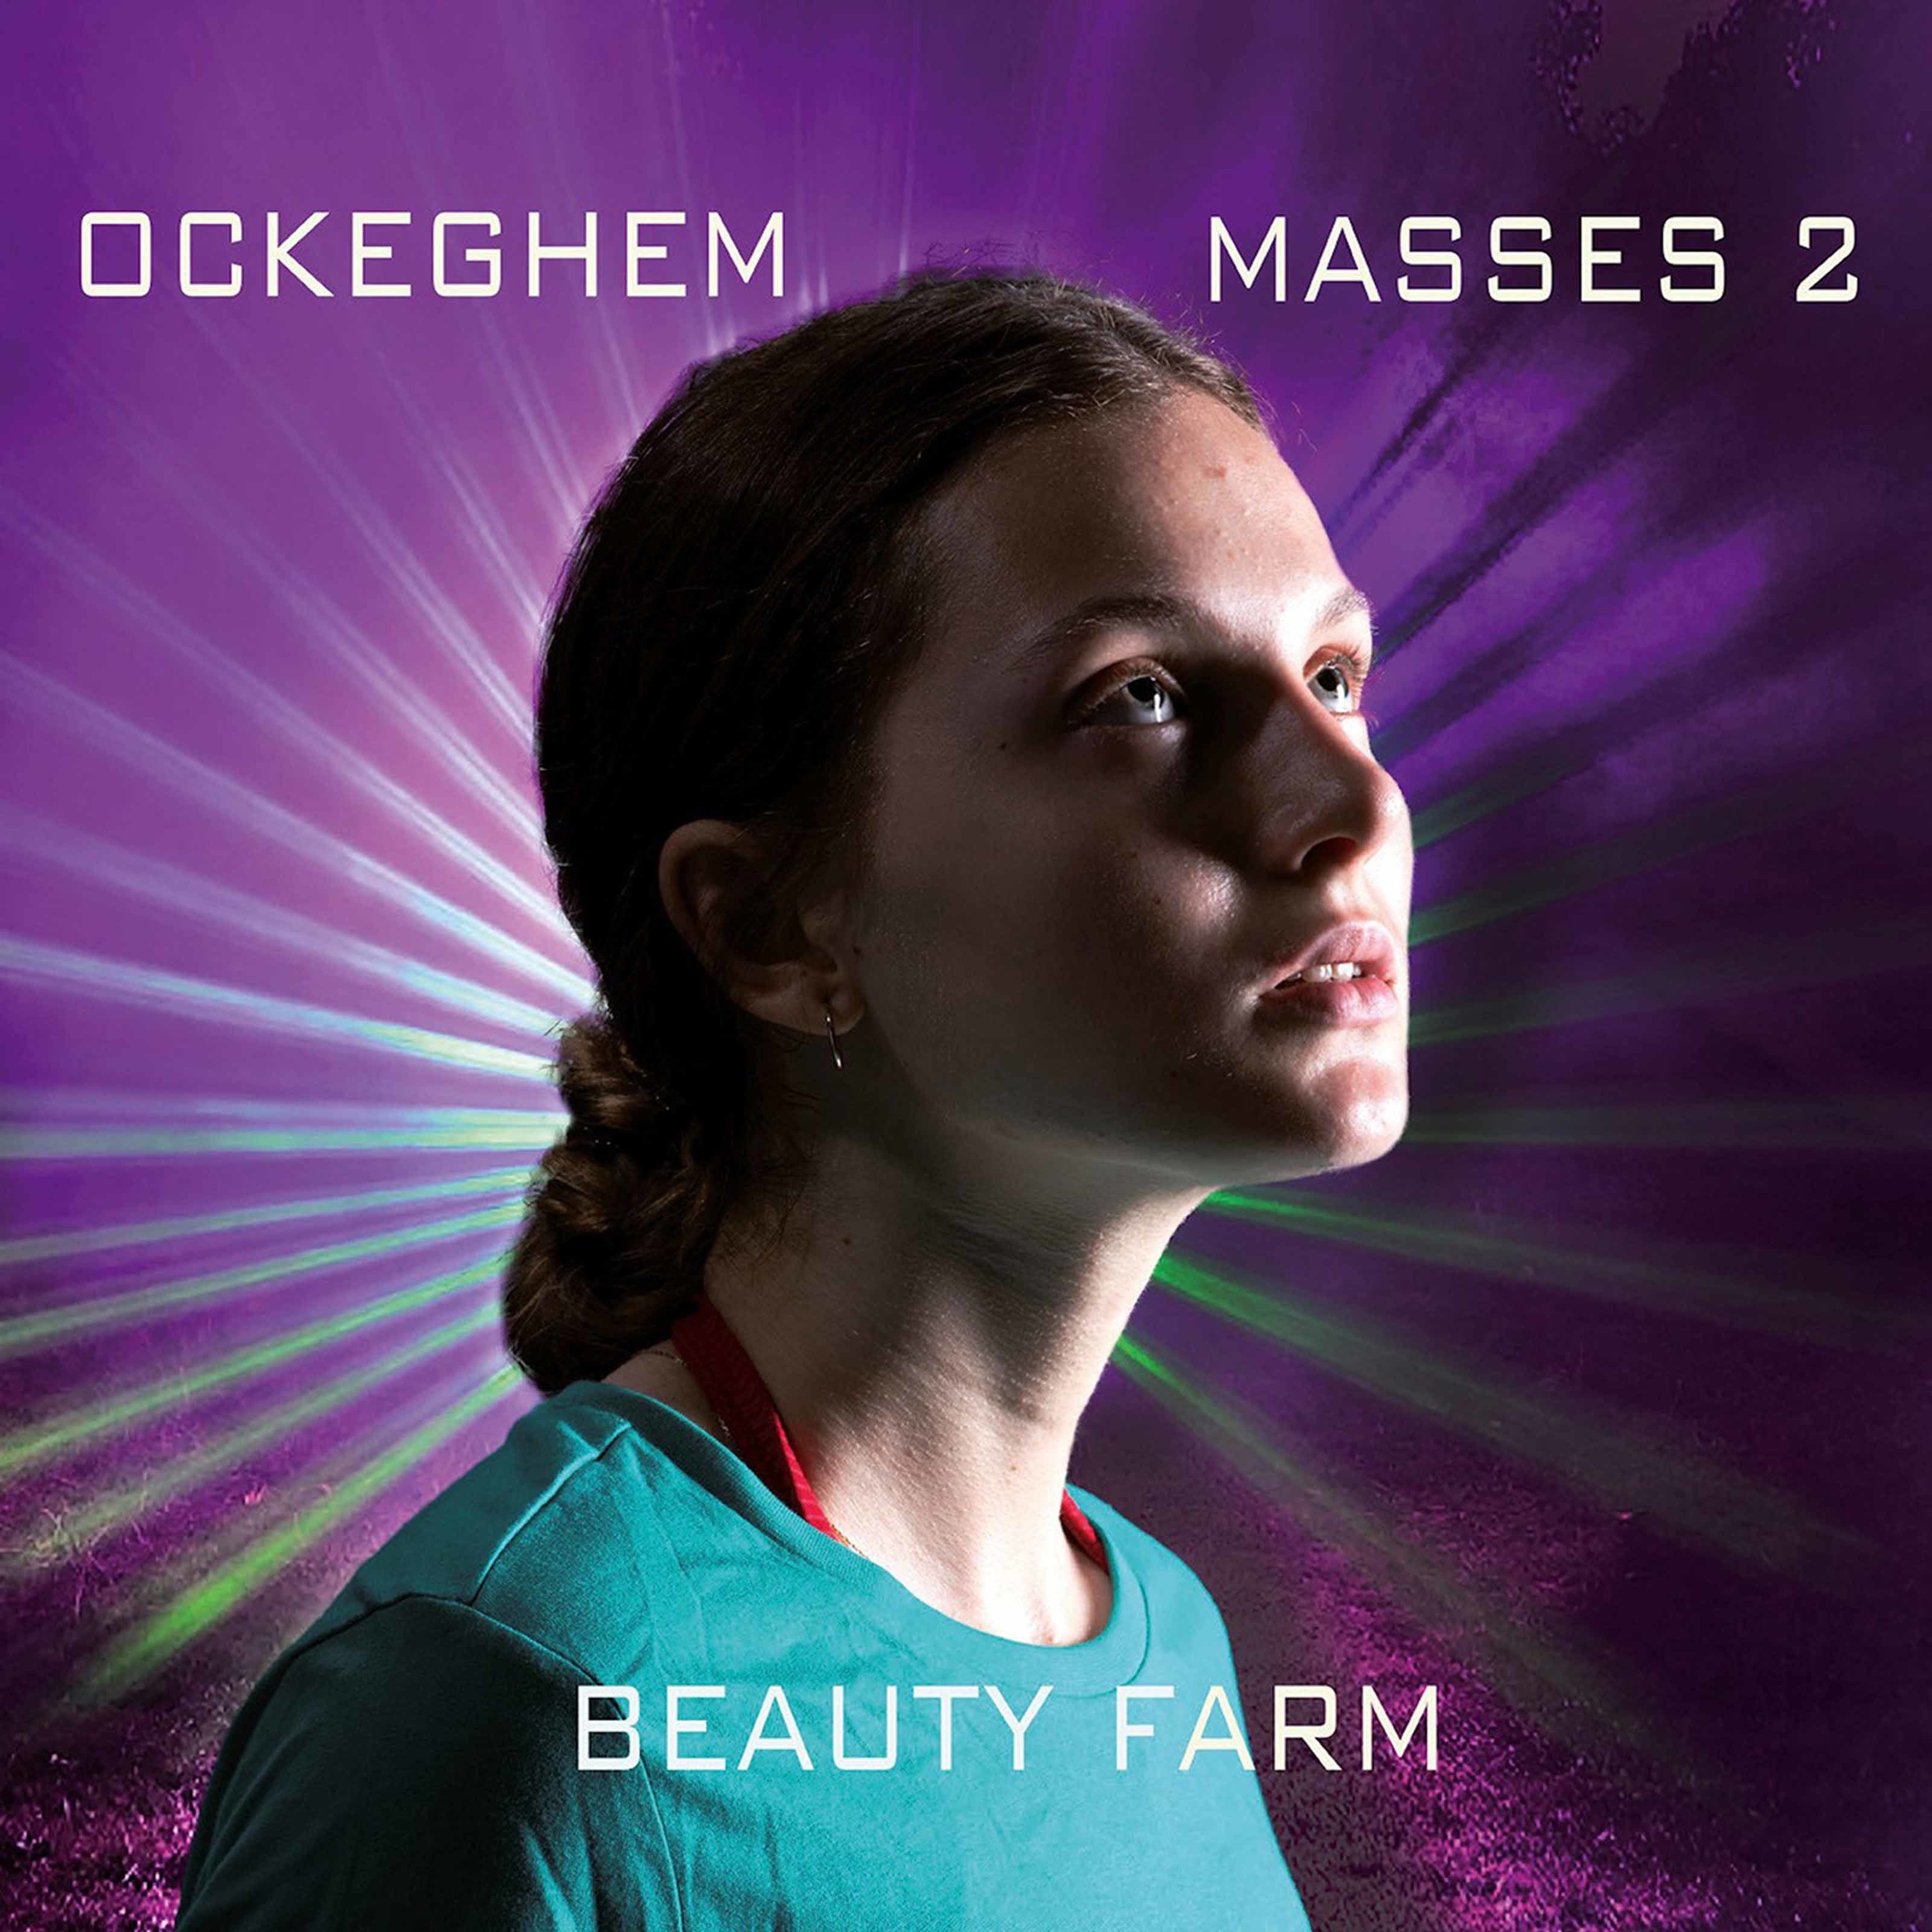 Beauty Farm - Ockeghem: Masses, Vol. 2 (2020) [FLAC 24bit/96kHz]